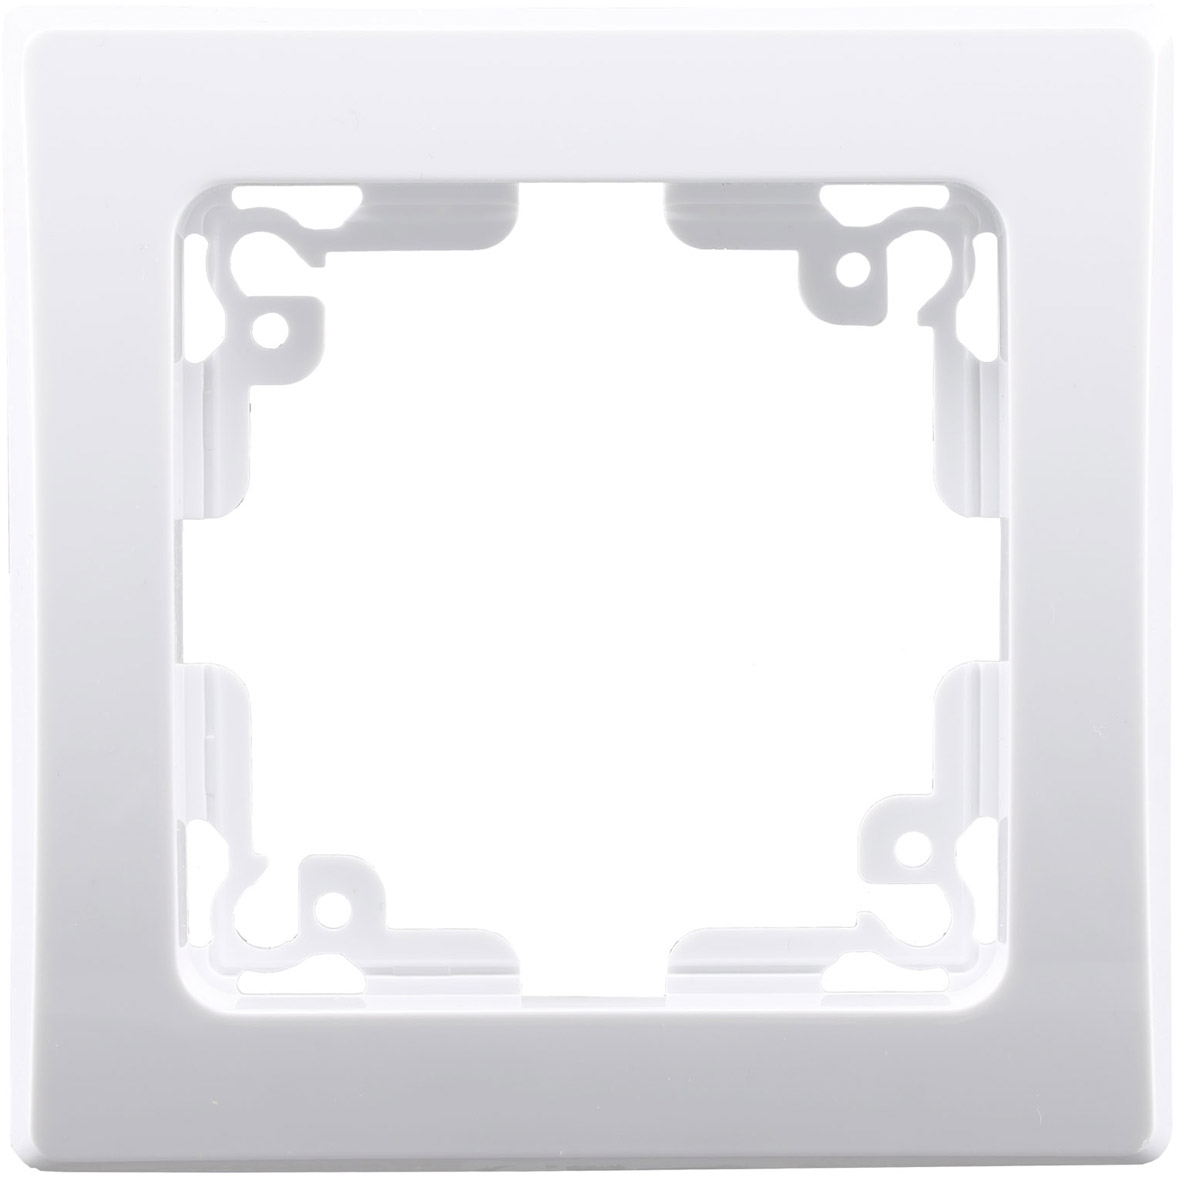 DELPHI Starter-Kit, 16-teilig, weiß 6x Steckdose, 2x Schalter, 8x Rahmen